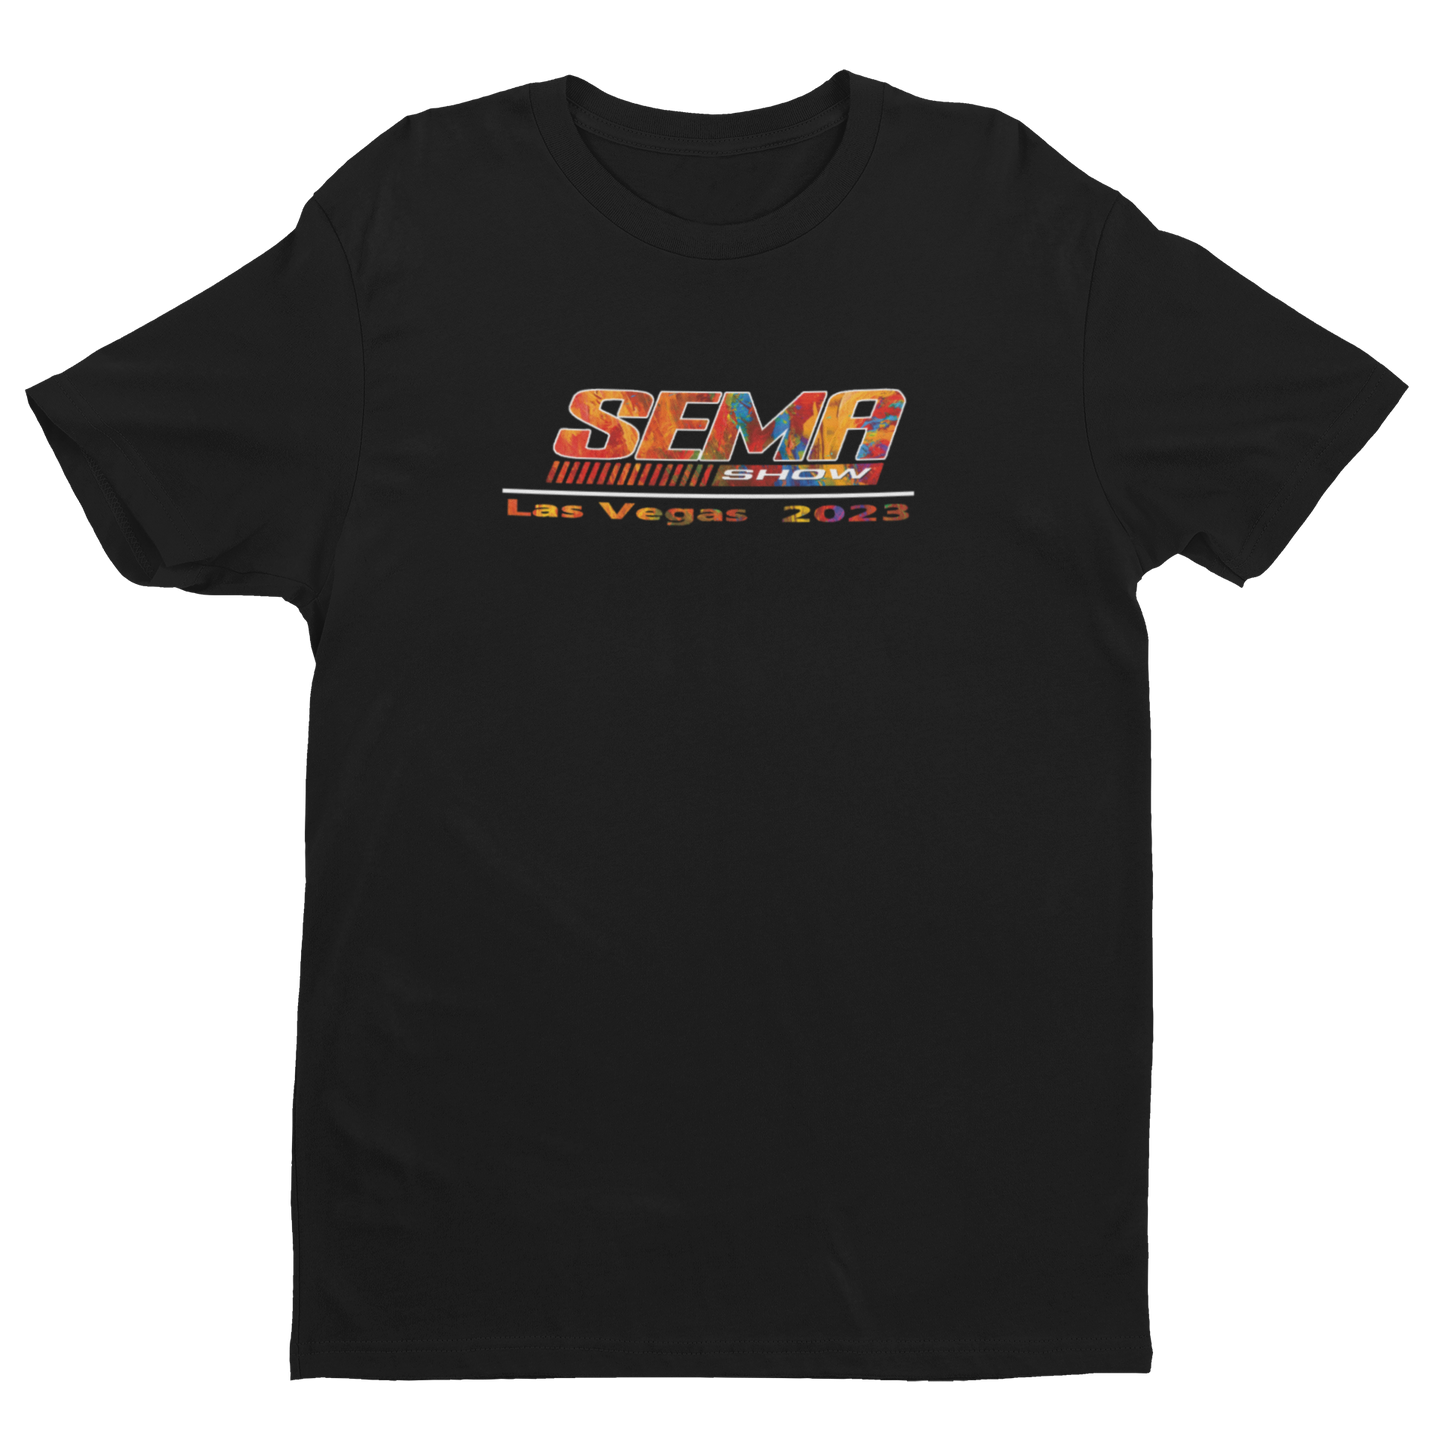 2023 Las Vegas Demon Fire - Short Sleeve T-shirt